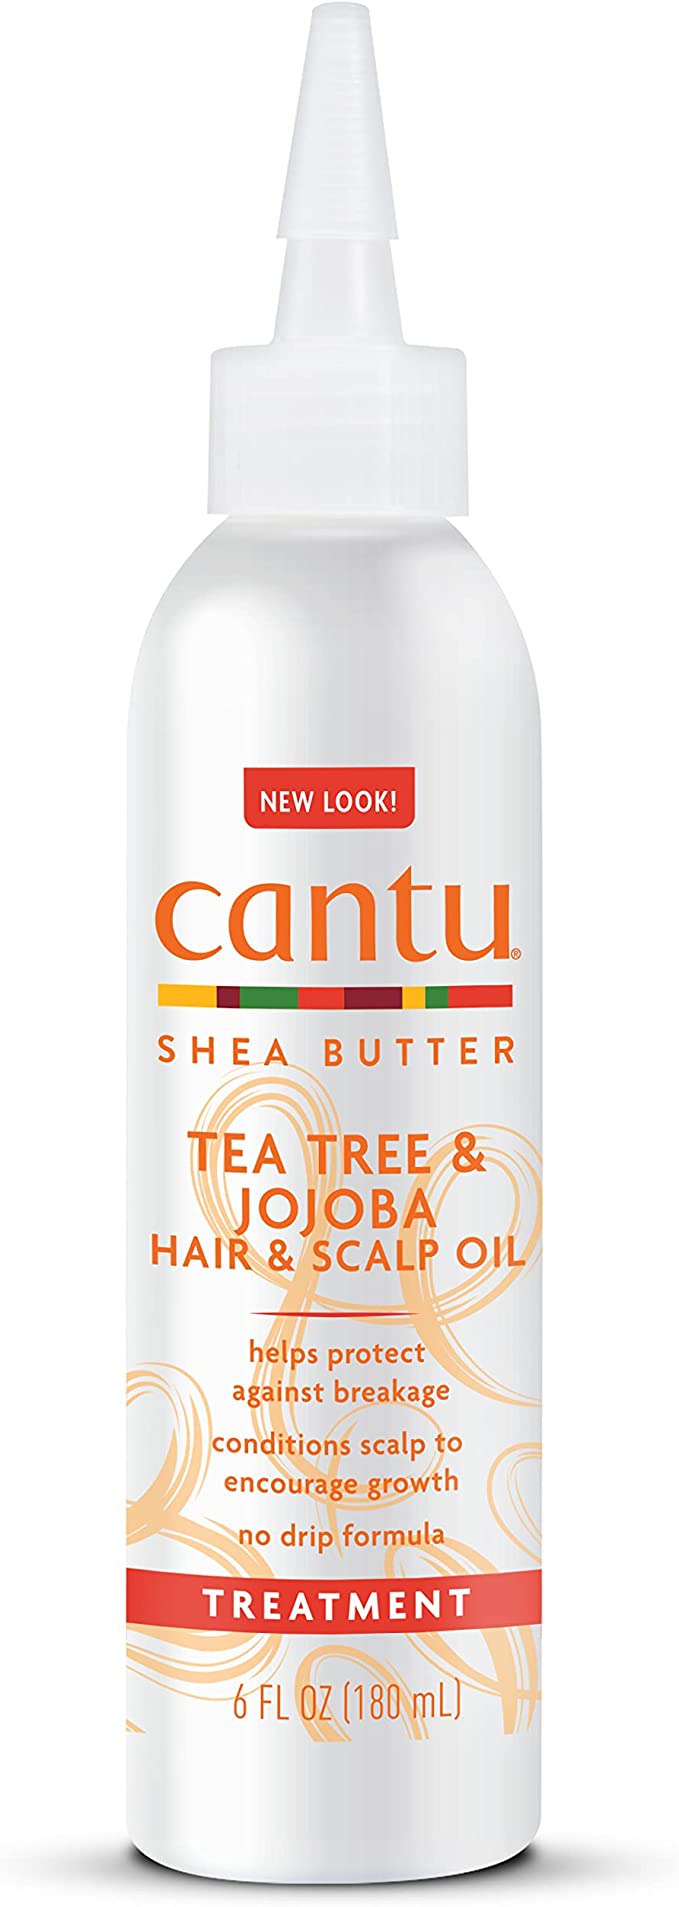 Tea Tree & Jojoba Hair & Scalp Oil 180ml